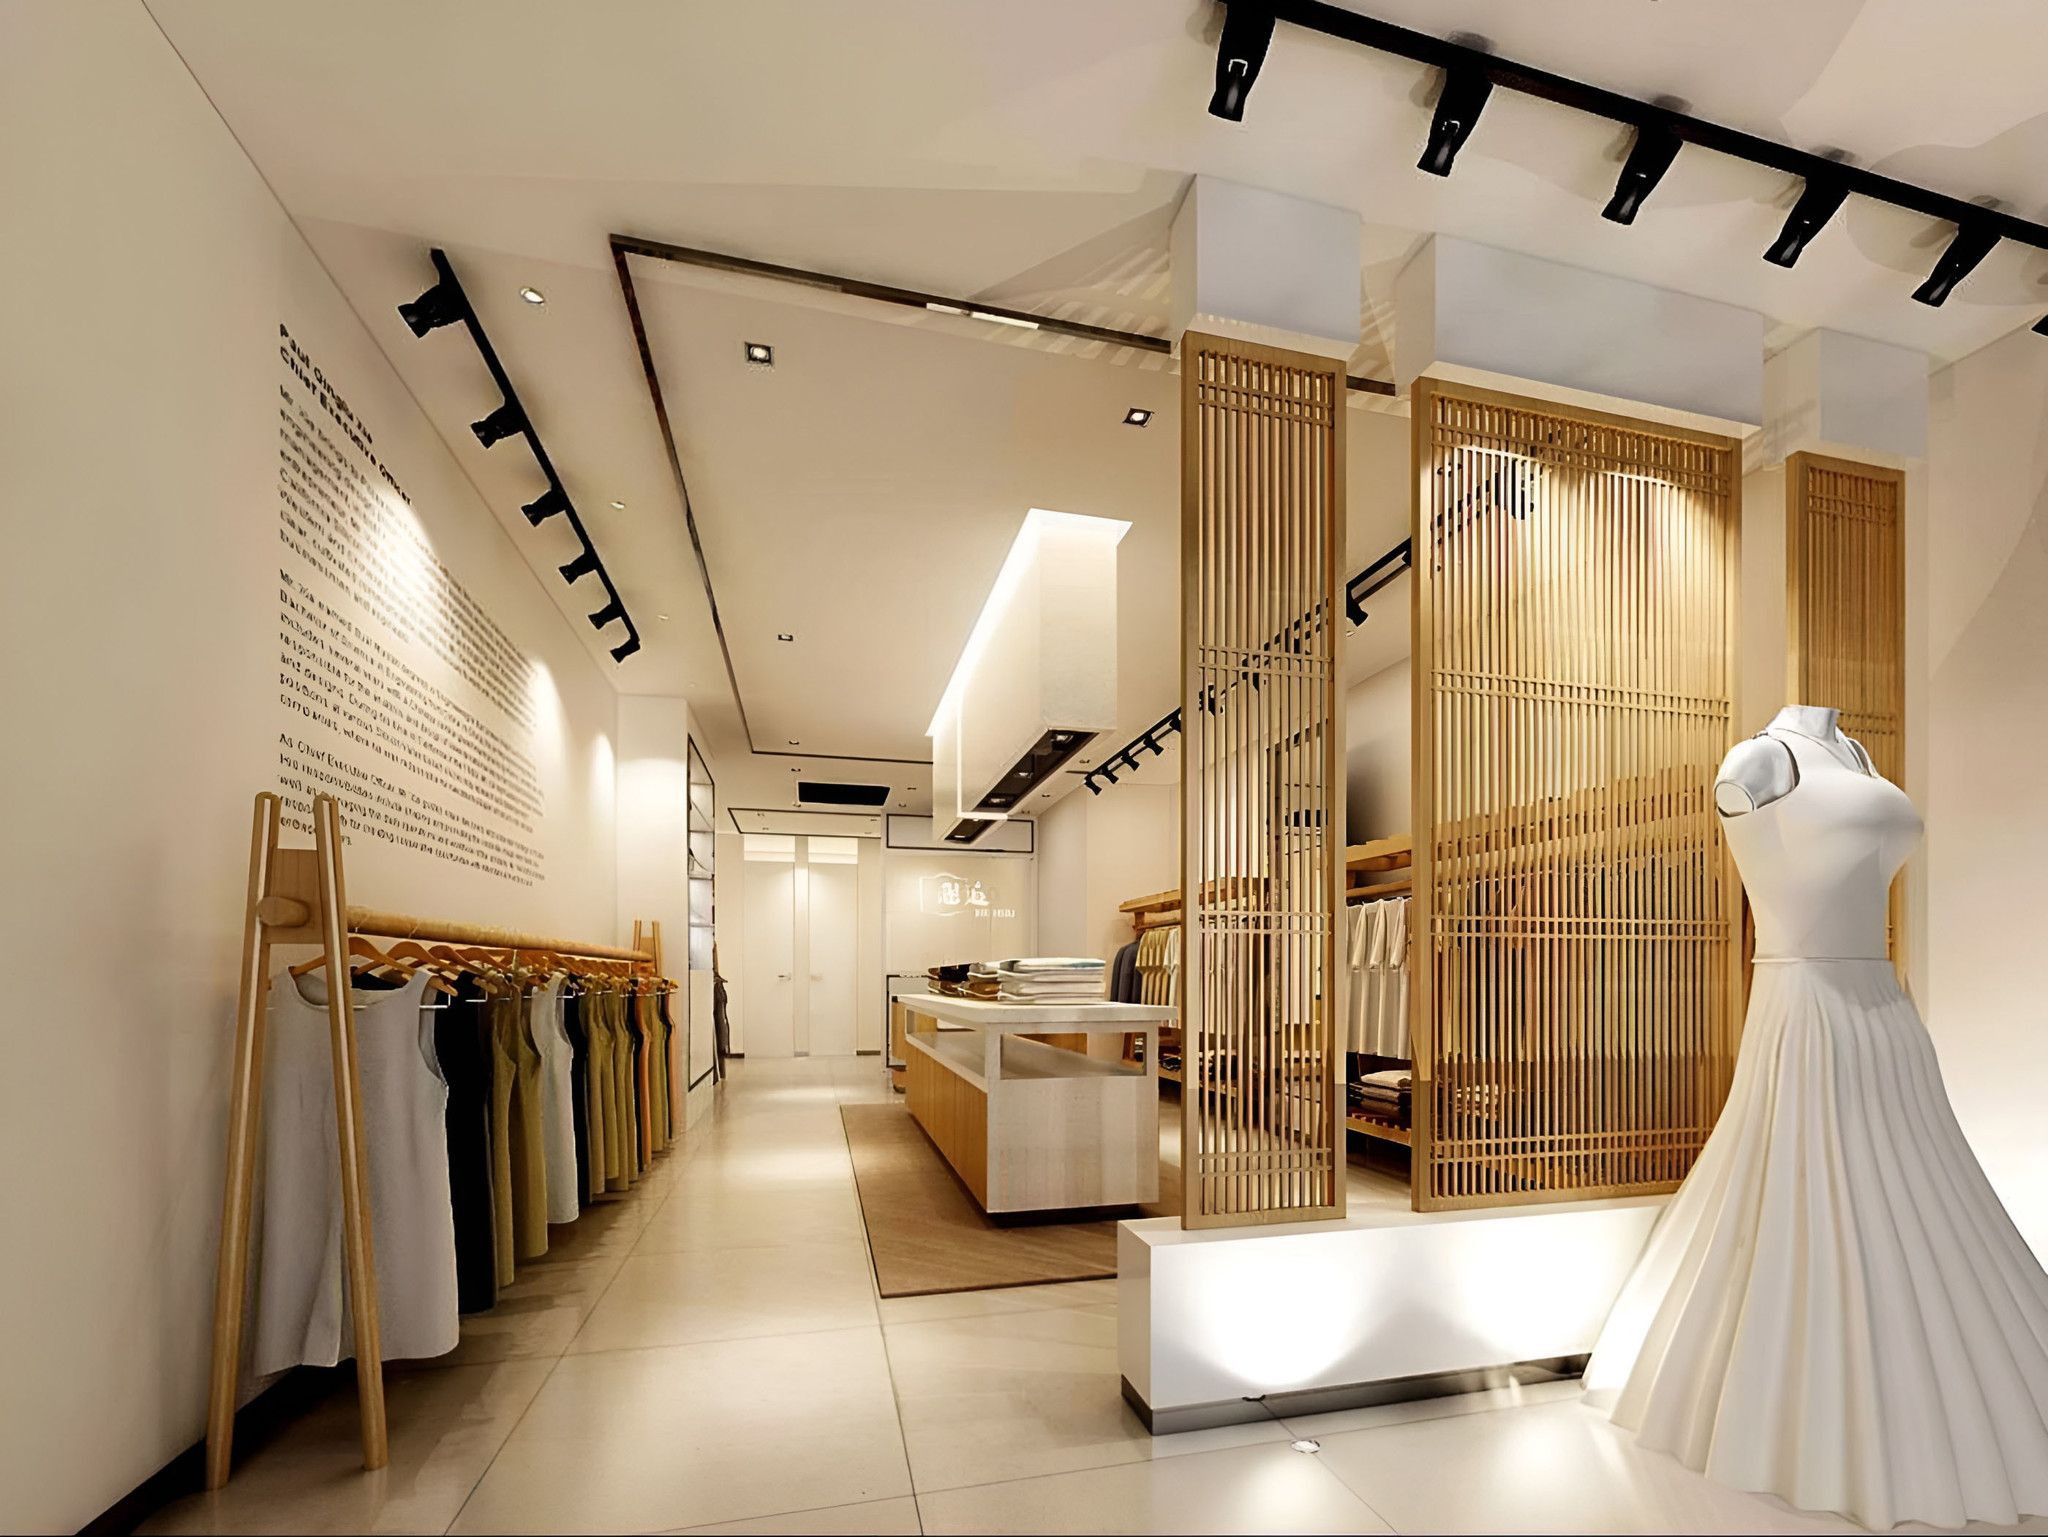 Cho thuê shophouse quận Tân Phú Chi tiết mặt bằng shophouse cửa hàng thời trang